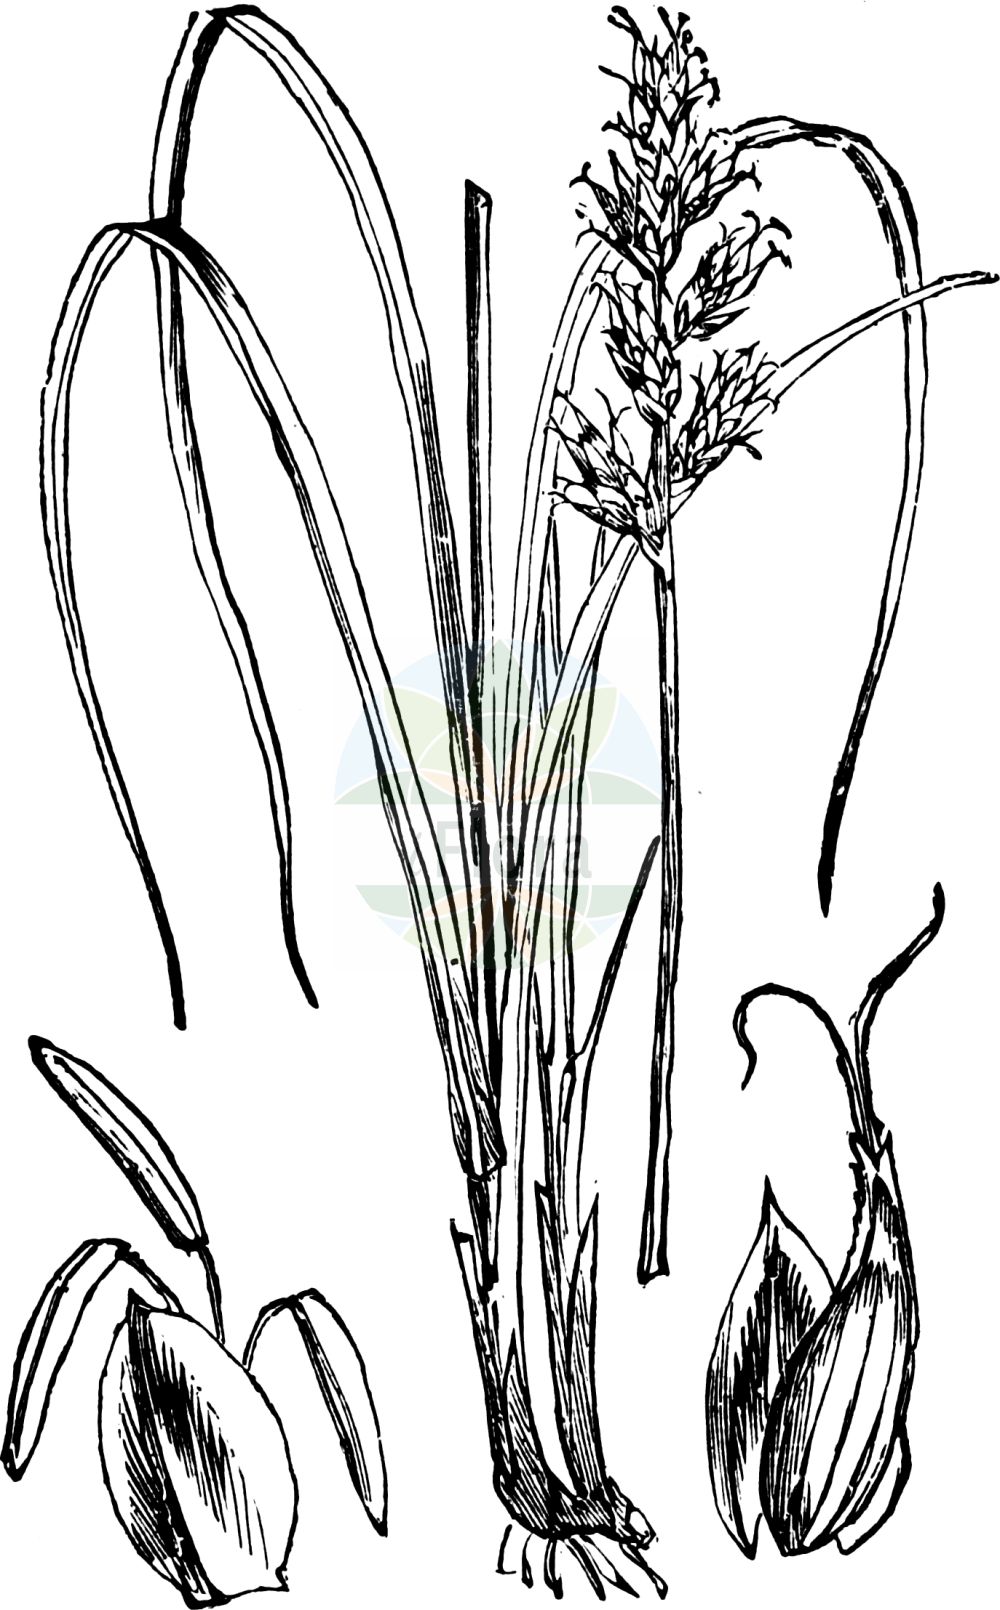 Historische Abbildung von Carex elongata (Walzen-Segge - Elongated Sedge). Das Bild zeigt Blatt, Bluete, Frucht und Same. ---- Historical Drawing of Carex elongata (Walzen-Segge - Elongated Sedge). The image is showing leaf, flower, fruit and seed.(Carex elongata,Walzen-Segge,Elongated Sedge,Carex elongata,Vignea elongata,Walzen-Segge,Langaehrige Segge,Elongated Sedge,Gingerbread Sedge,Carex,Segge,Sedge,Cyperaceae,Sauergräser,Sedge family,Blatt,Bluete,Frucht,Same,leaf,flower,fruit,seed,Fitch et al. (1880))